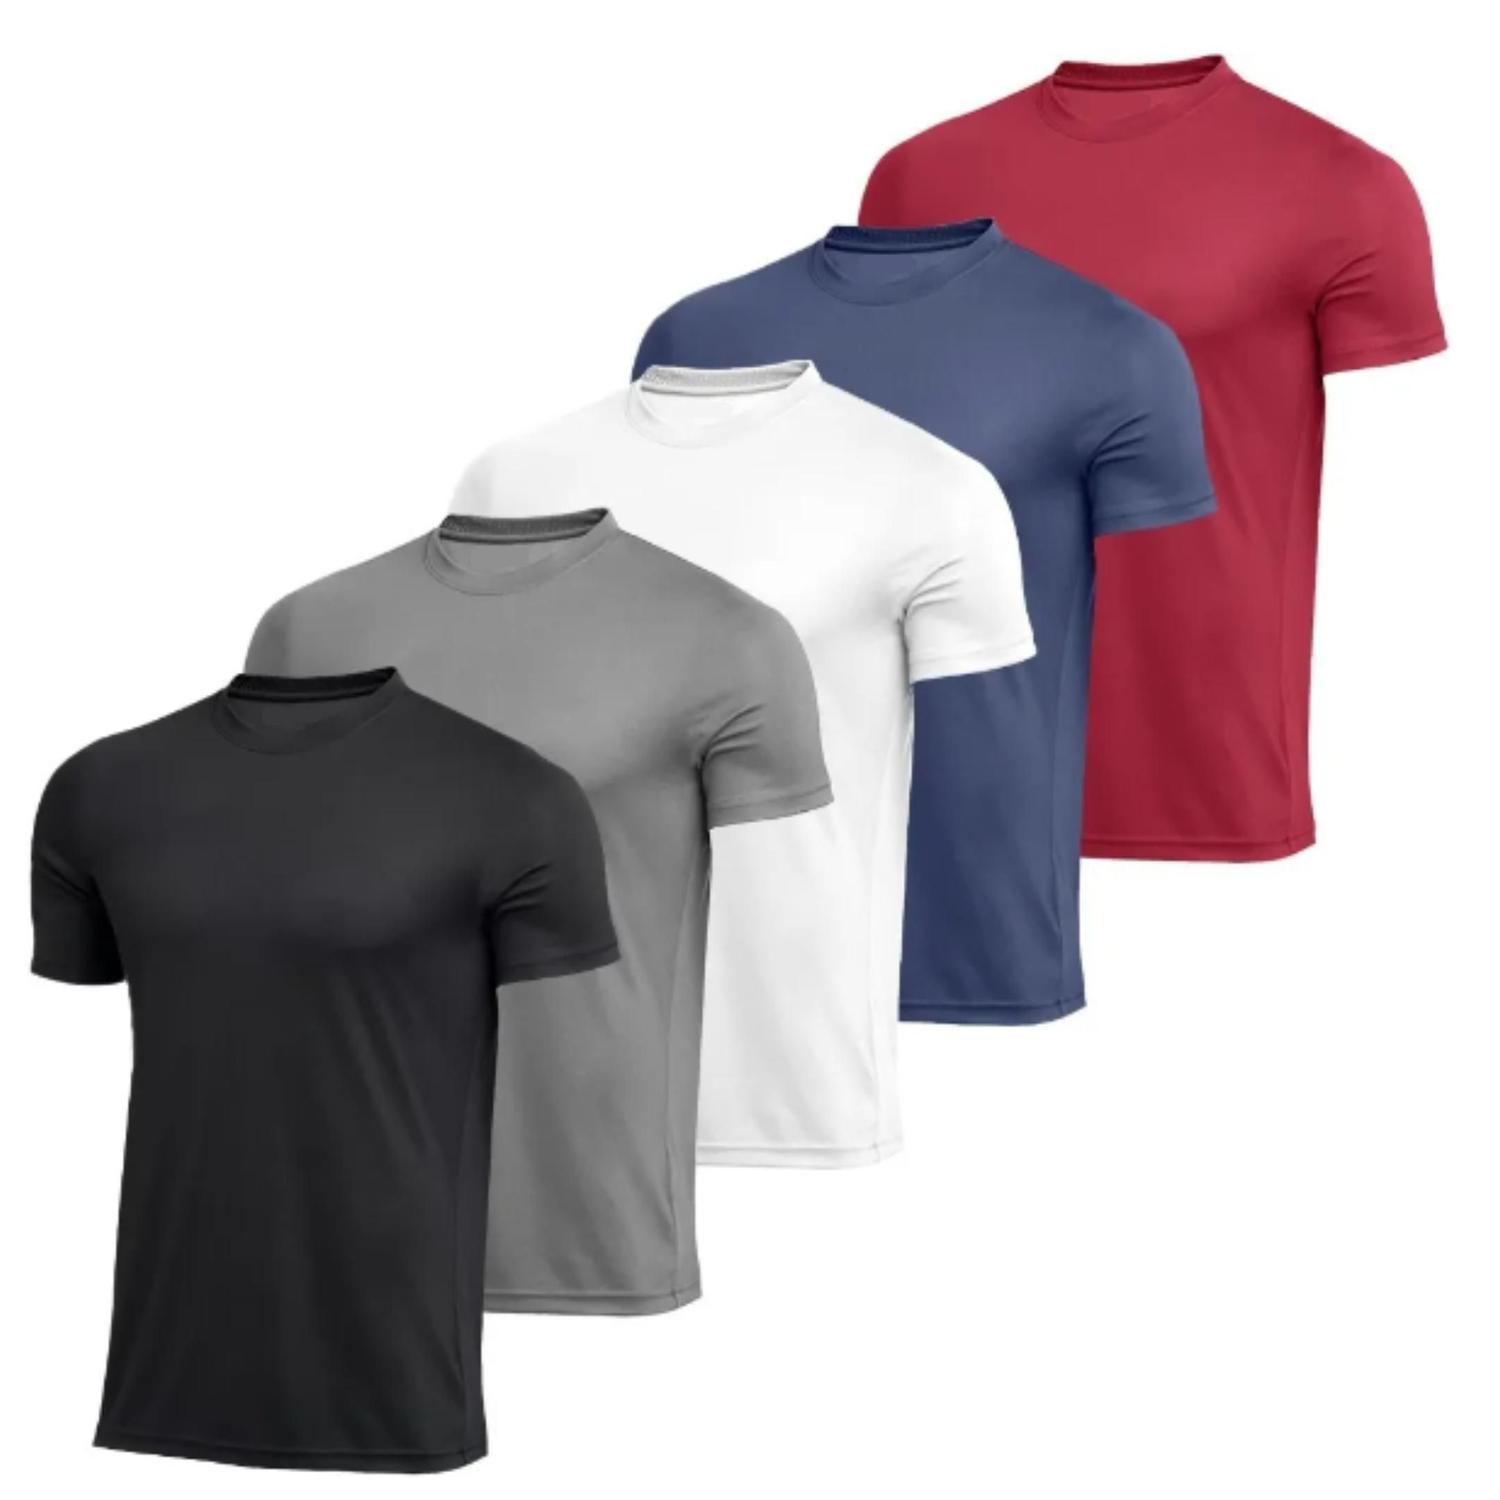 Camiseta Dry Fit Masculina Lisa Academia Treino Esporte, Magalu Empresas